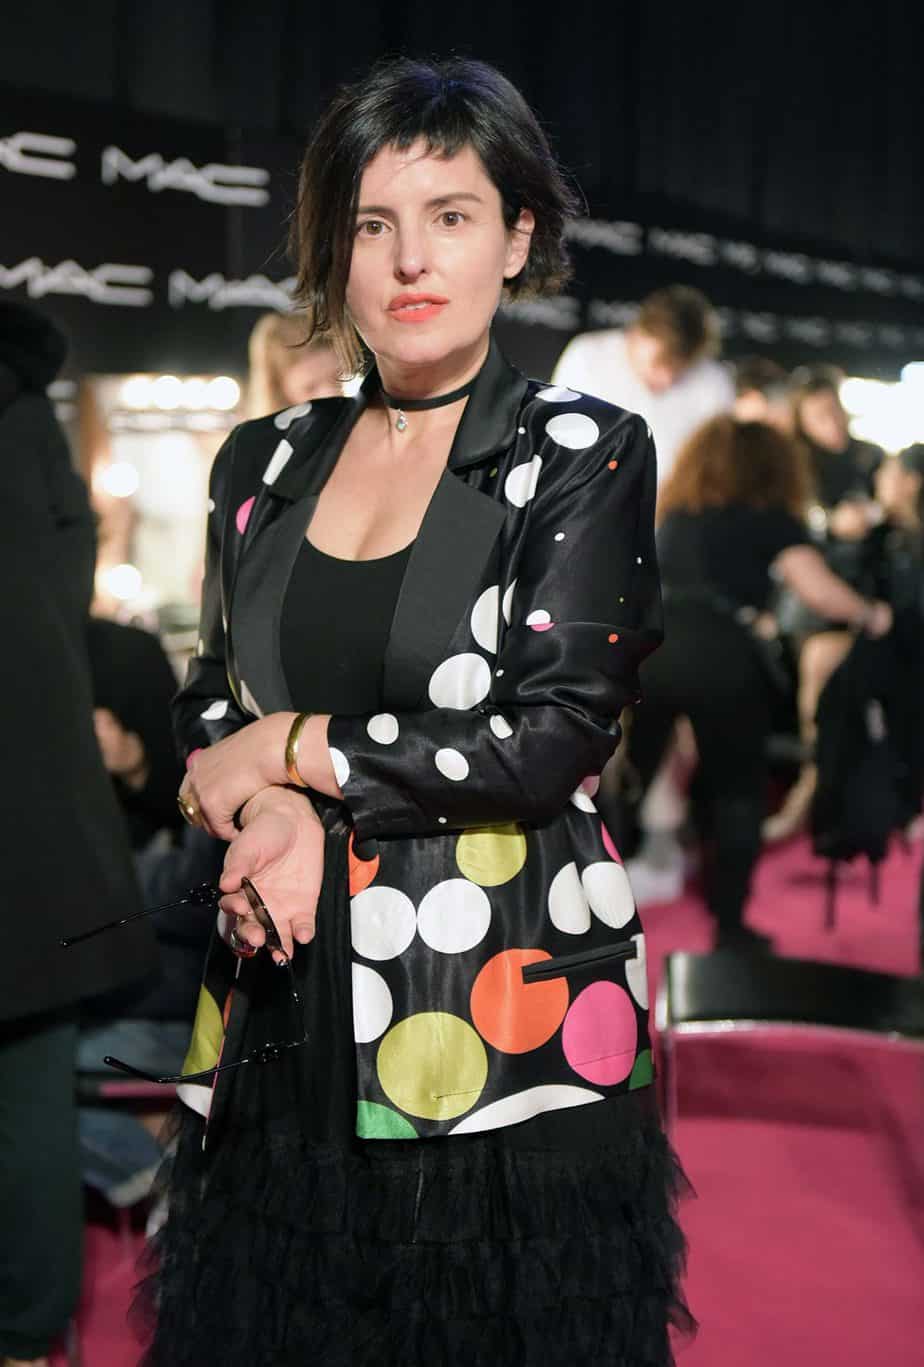 לארה רוסנובסקי, שבוע האופנה תל אביב 2019, צילום סרג'ו סטרודובצב - 2